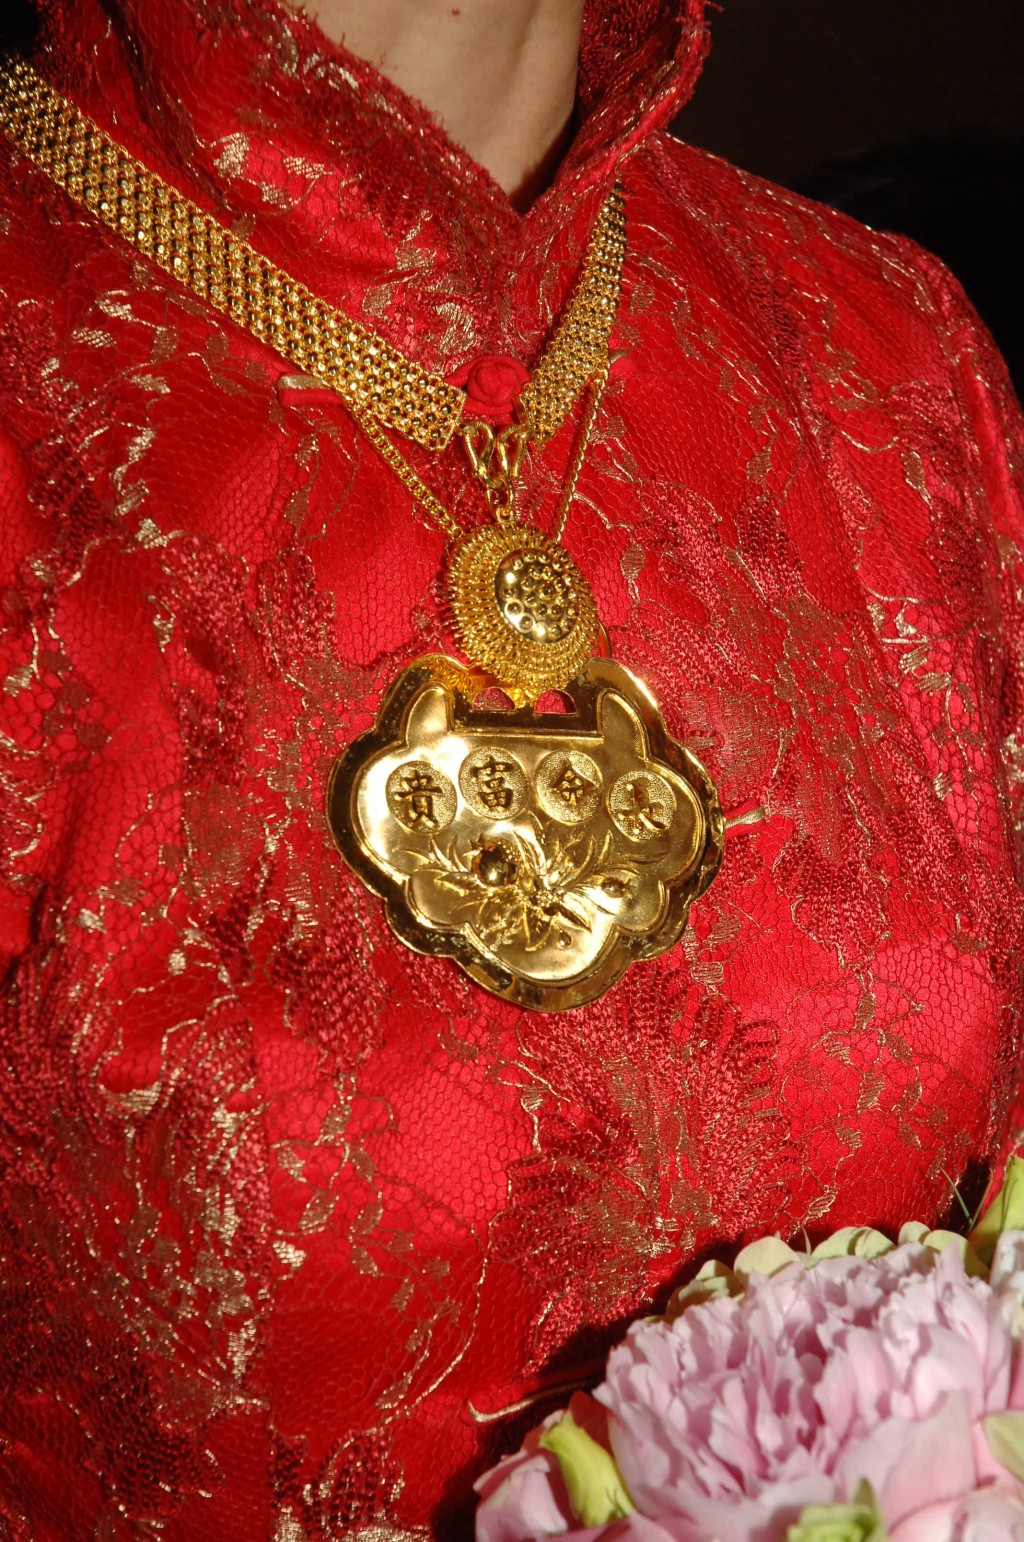 周蕙蕙出嫁时有好大块金牌挂胸前。